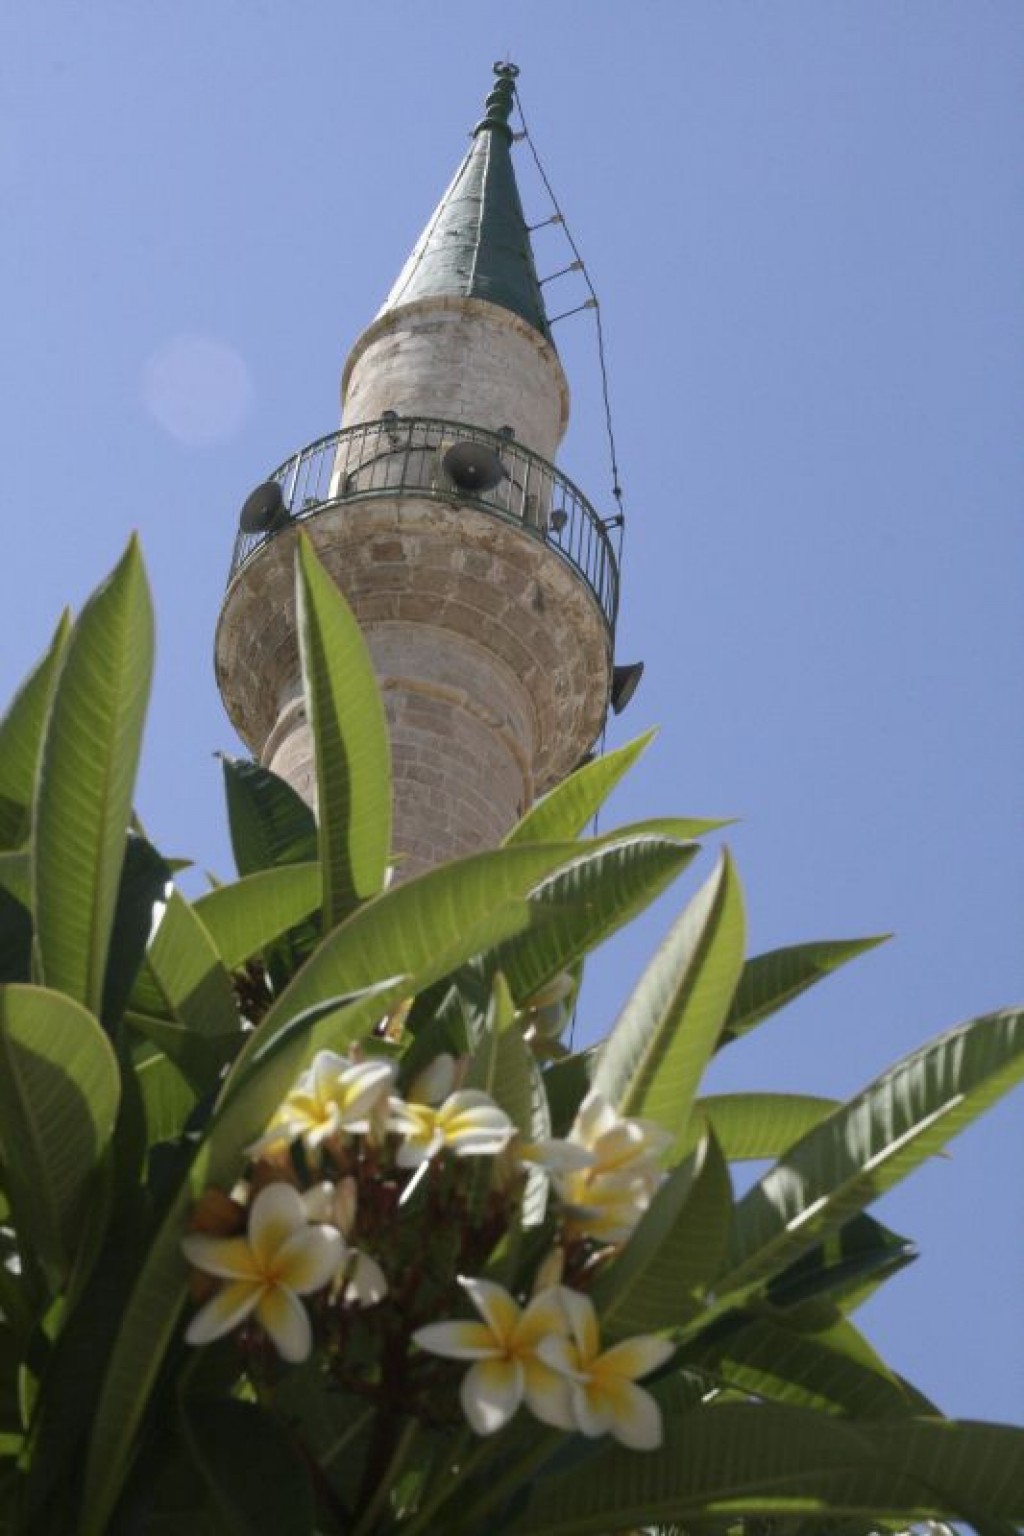 Looking up at the Minaret of the al-Jazaar Mosque.